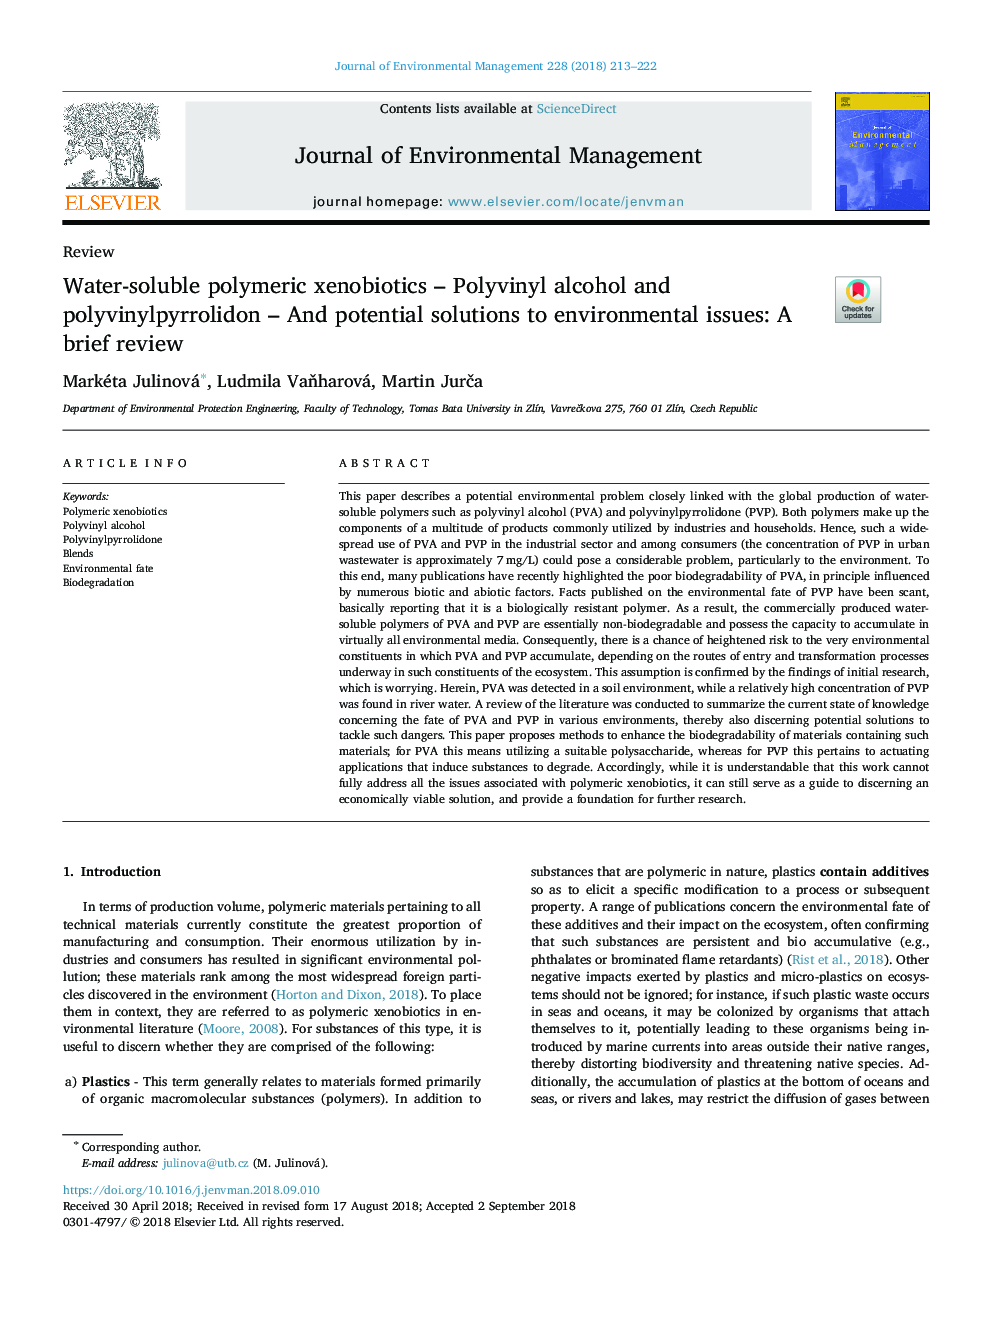 اکسن بیوتیک های پلیمری محلول در آب - پلی وینیل الکل و پلی وینیل پریرولیدون - و راه حل های بالقوه برای مسائل زیست محیطی: یک بررسی کوتاه